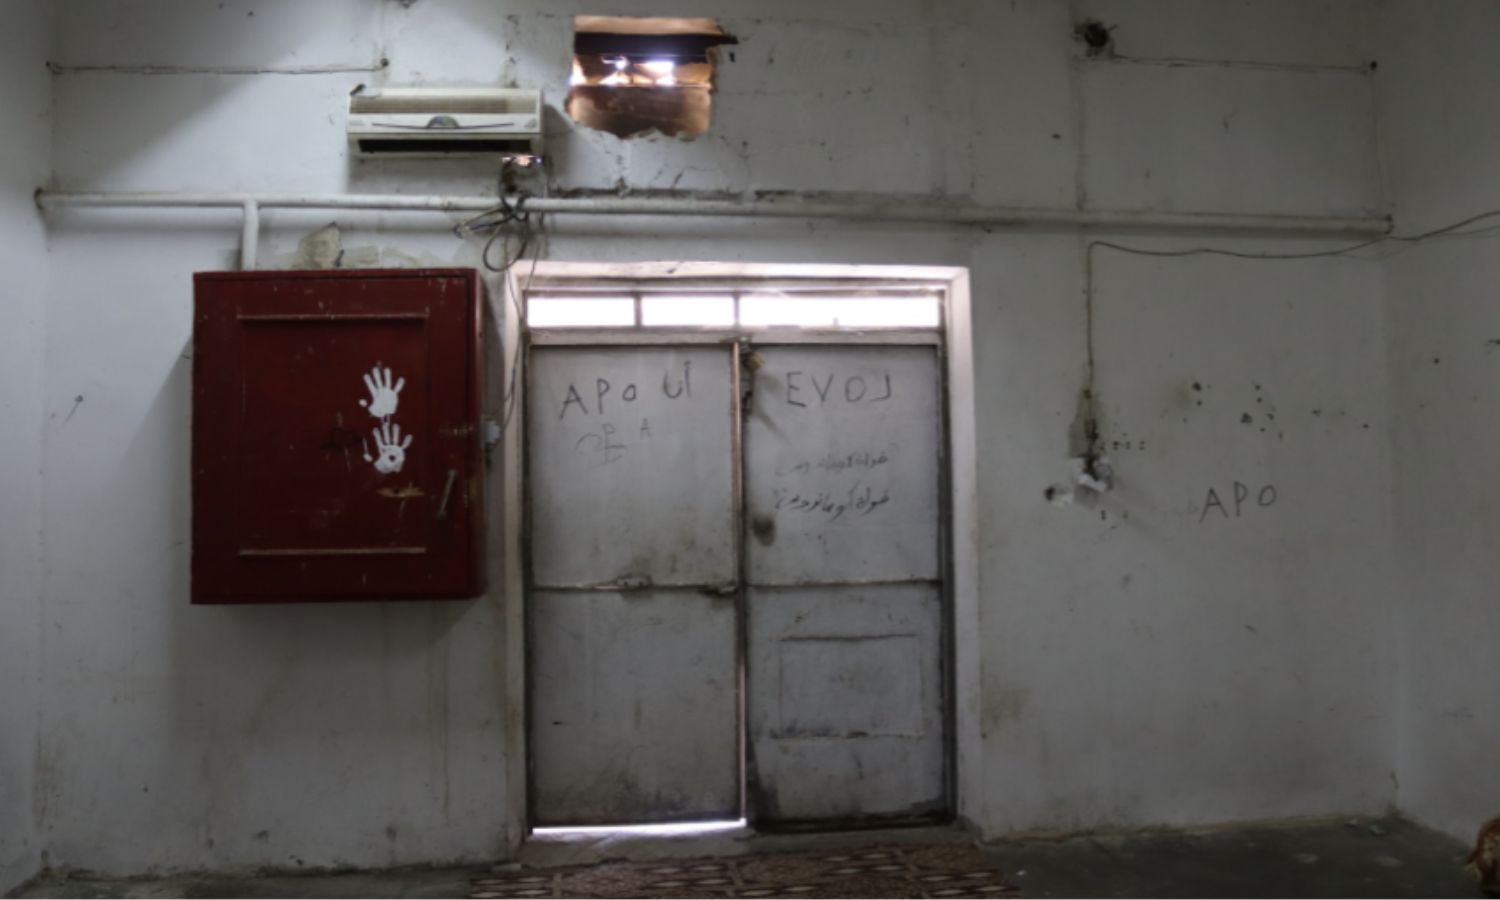 داخل منشأة حجز الأفراد مؤقتاً في المبنى "ب"- تموز 2013 (المركز السوري للعدالة والمساءلة)